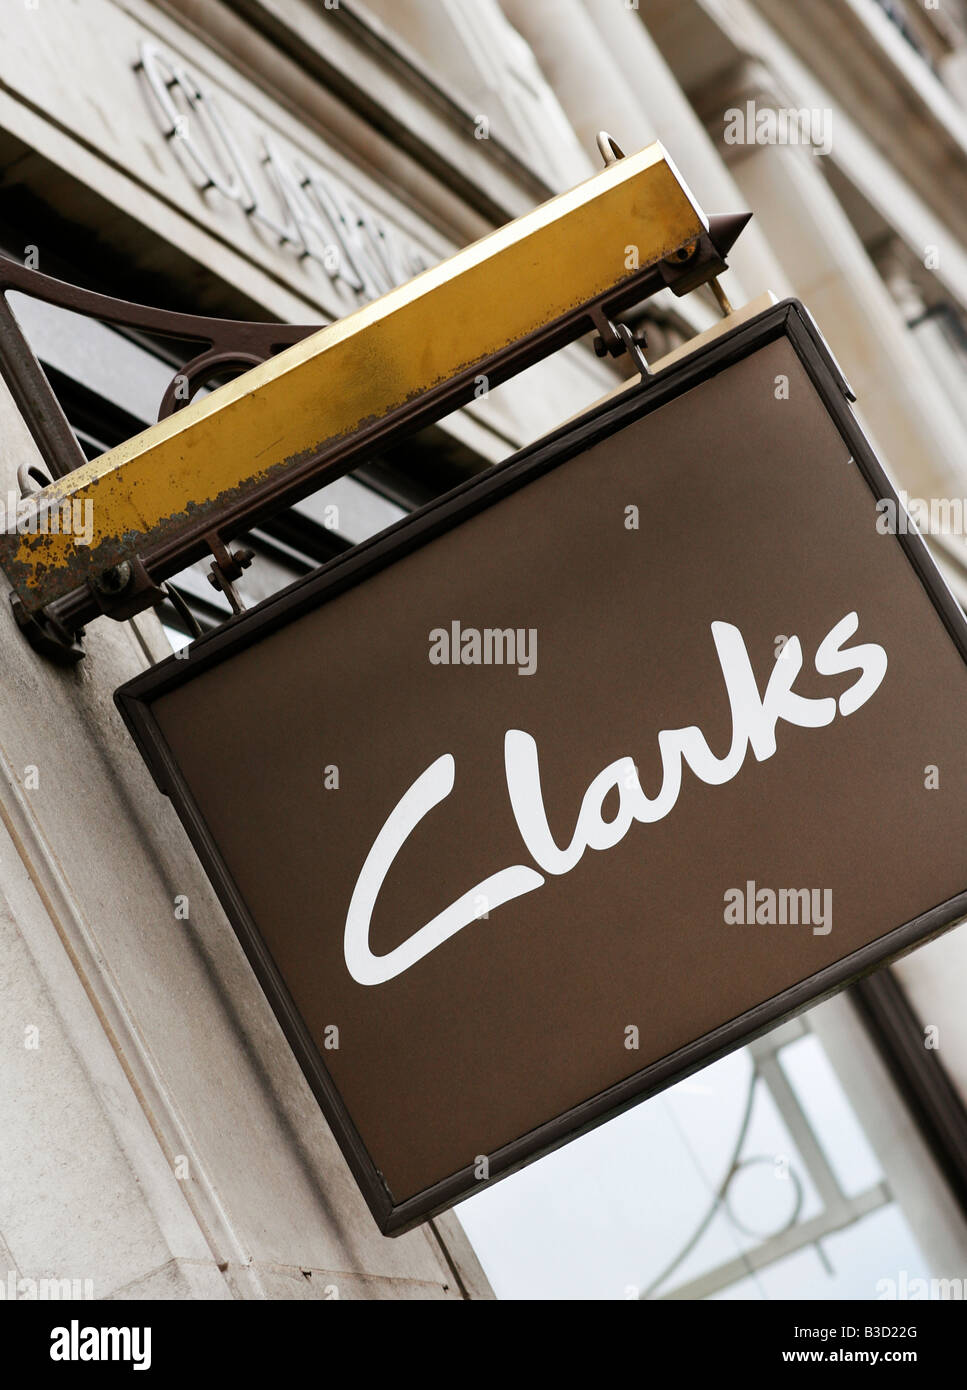 Clarks shop sign Banque D'Images